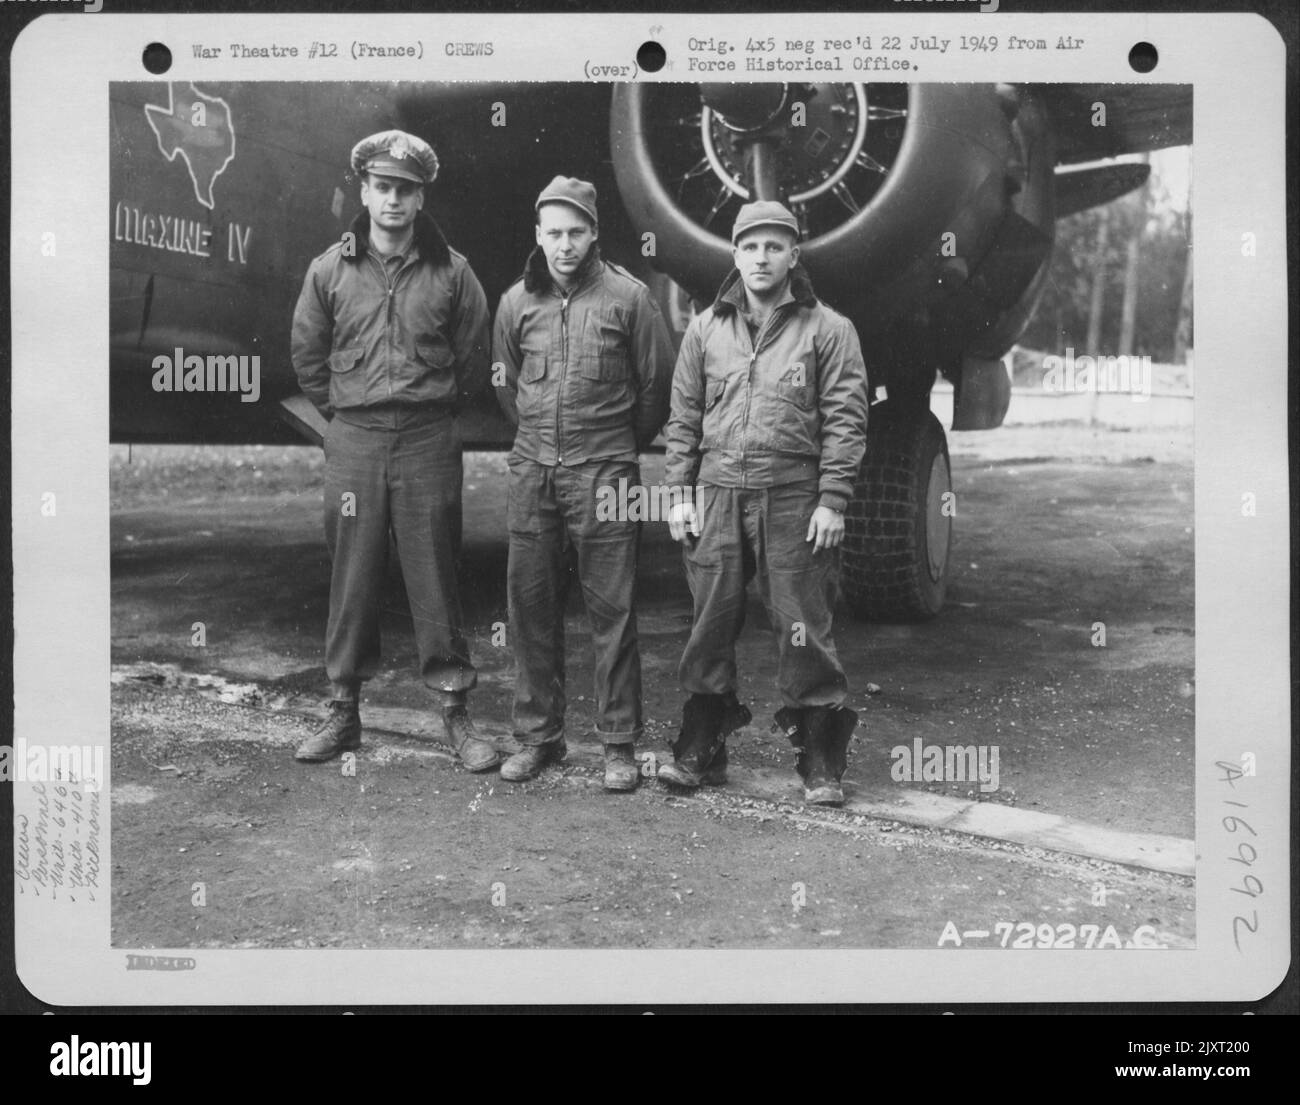 Le lieutenant Pengelly et l'équipage du 646th Bomb Squadron, 410th Bomb Group, posent à côté du Douglas A-20 'Maxine IV' dans Une base aérienne de 9th en France. Ils sont, de gauche à droite : Lt. Pengelly, Cpl. Furlow et Cpl. Appareil motorisé. Octobre 1944. Banque D'Images